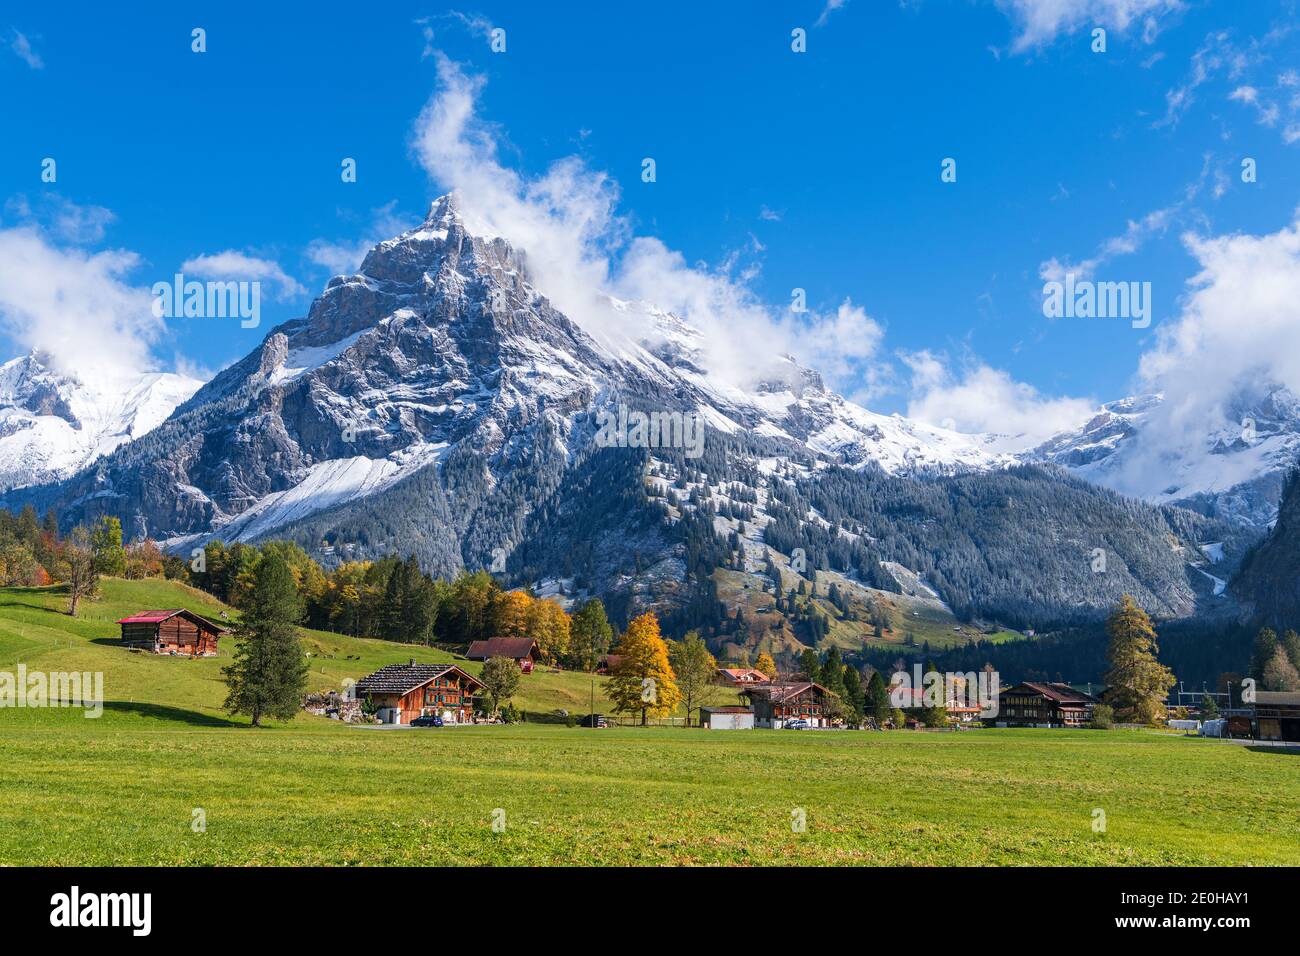 The mountain Dundenhorn in Kandersteg (Switzerland) Stock Photo